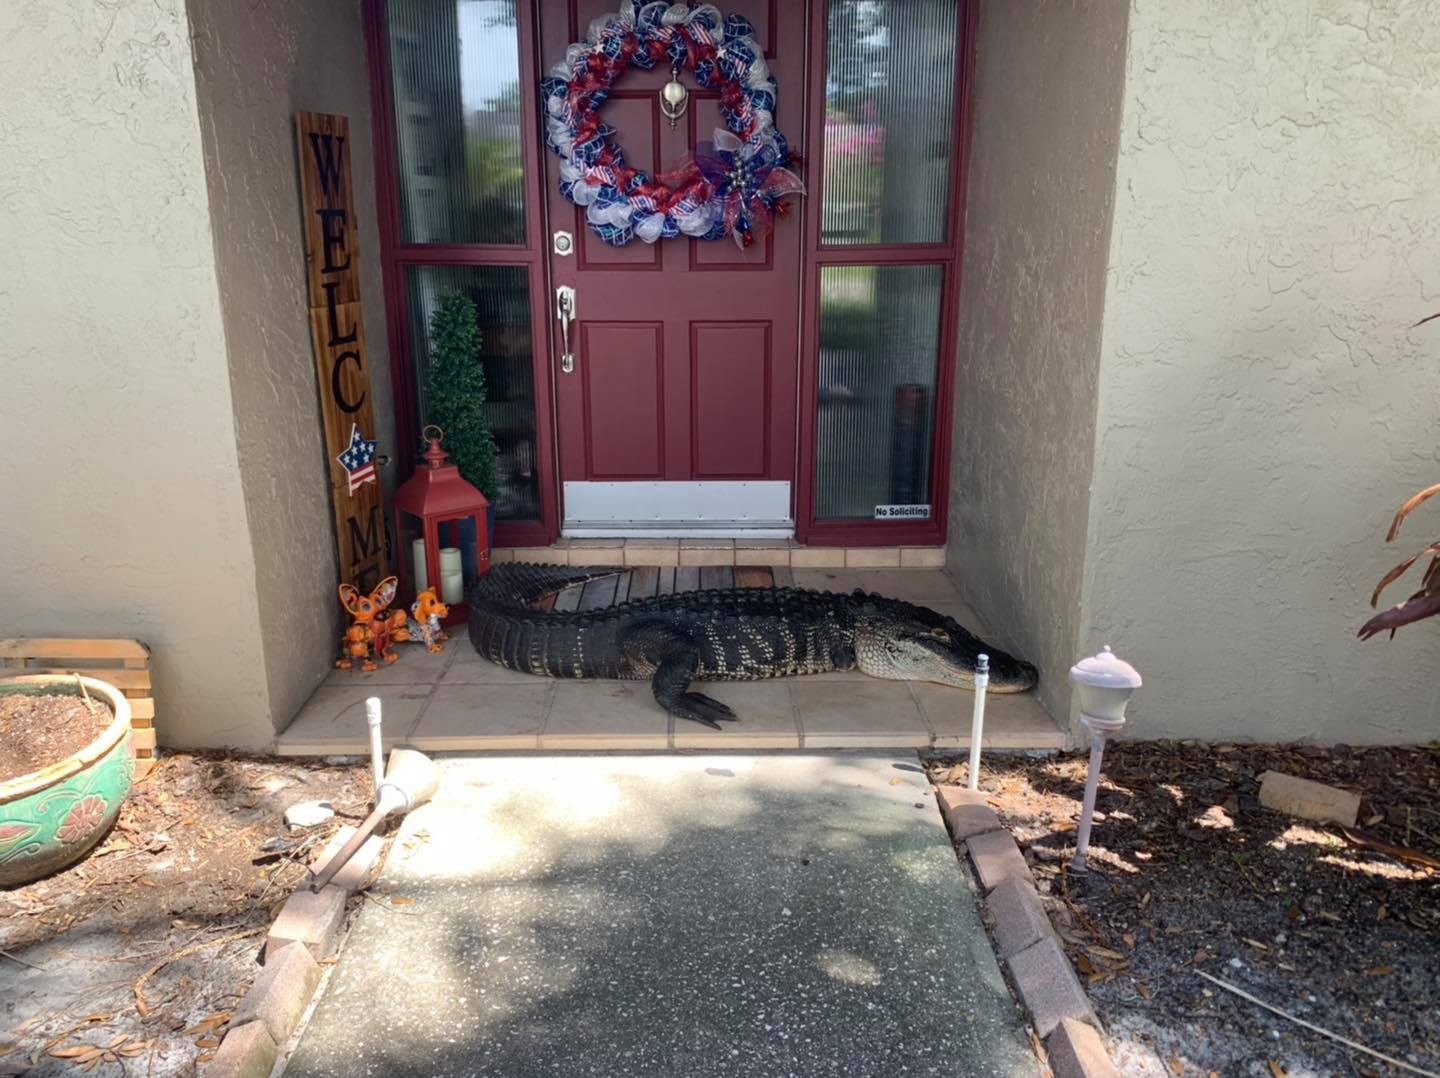 Família se surpreende com jacaré de 3 metros na porta de casa (Foto: Reprodução/Facebook)